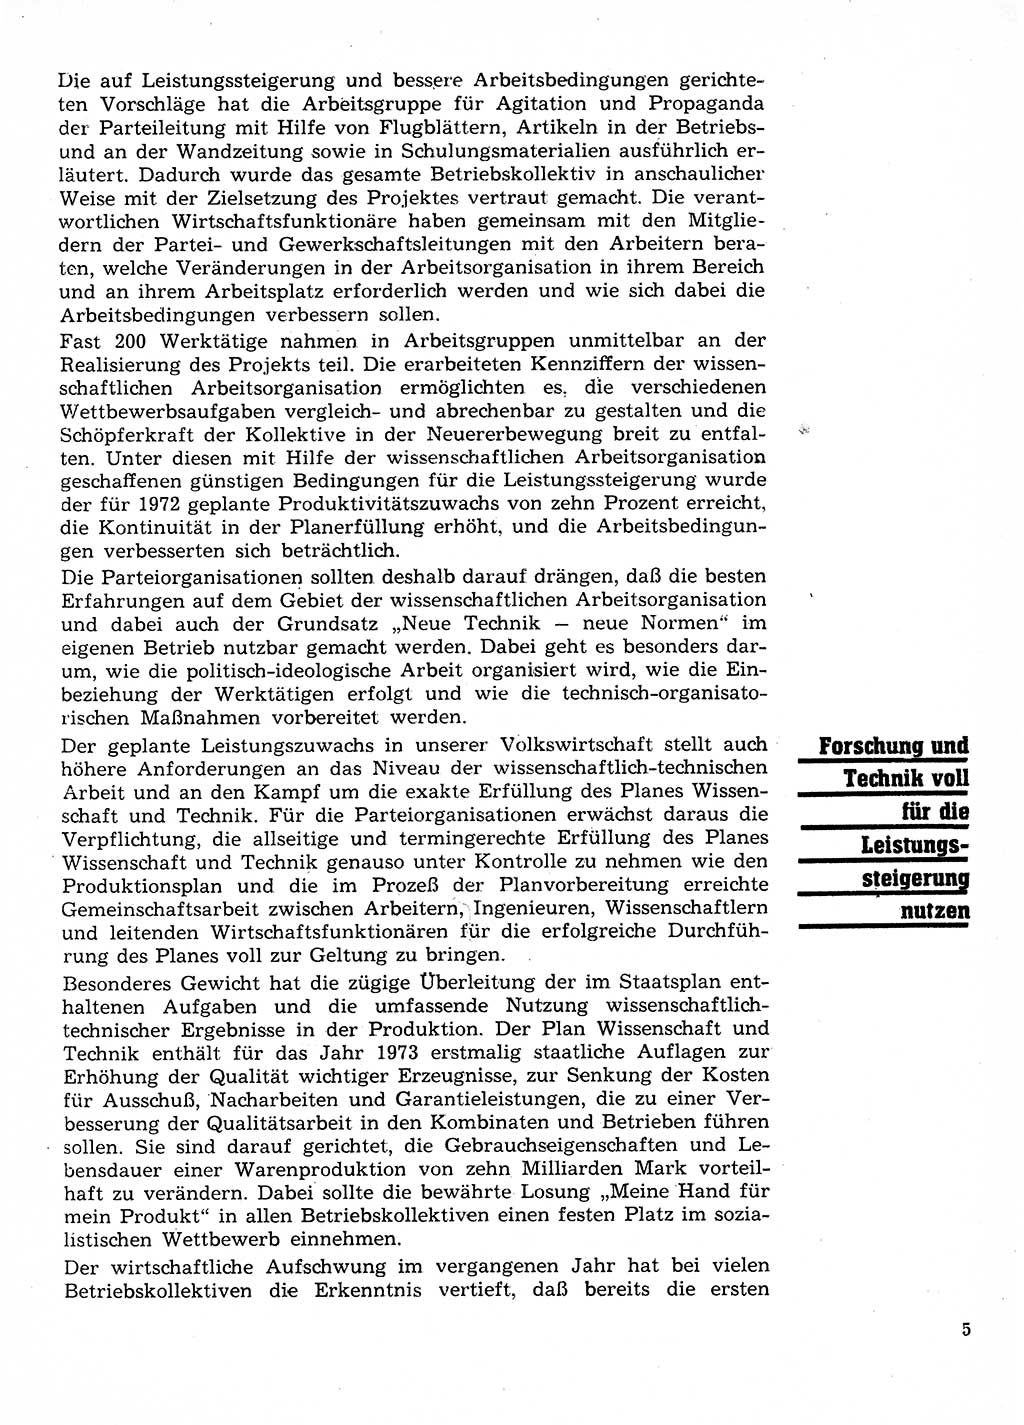 Neuer Weg (NW), Organ des Zentralkomitees (ZK) der SED (Sozialistische Einheitspartei Deutschlands) für Fragen des Parteilebens, 28. Jahrgang [Deutsche Demokratische Republik (DDR)] 1973, Seite 5 (NW ZK SED DDR 1973, S. 5)